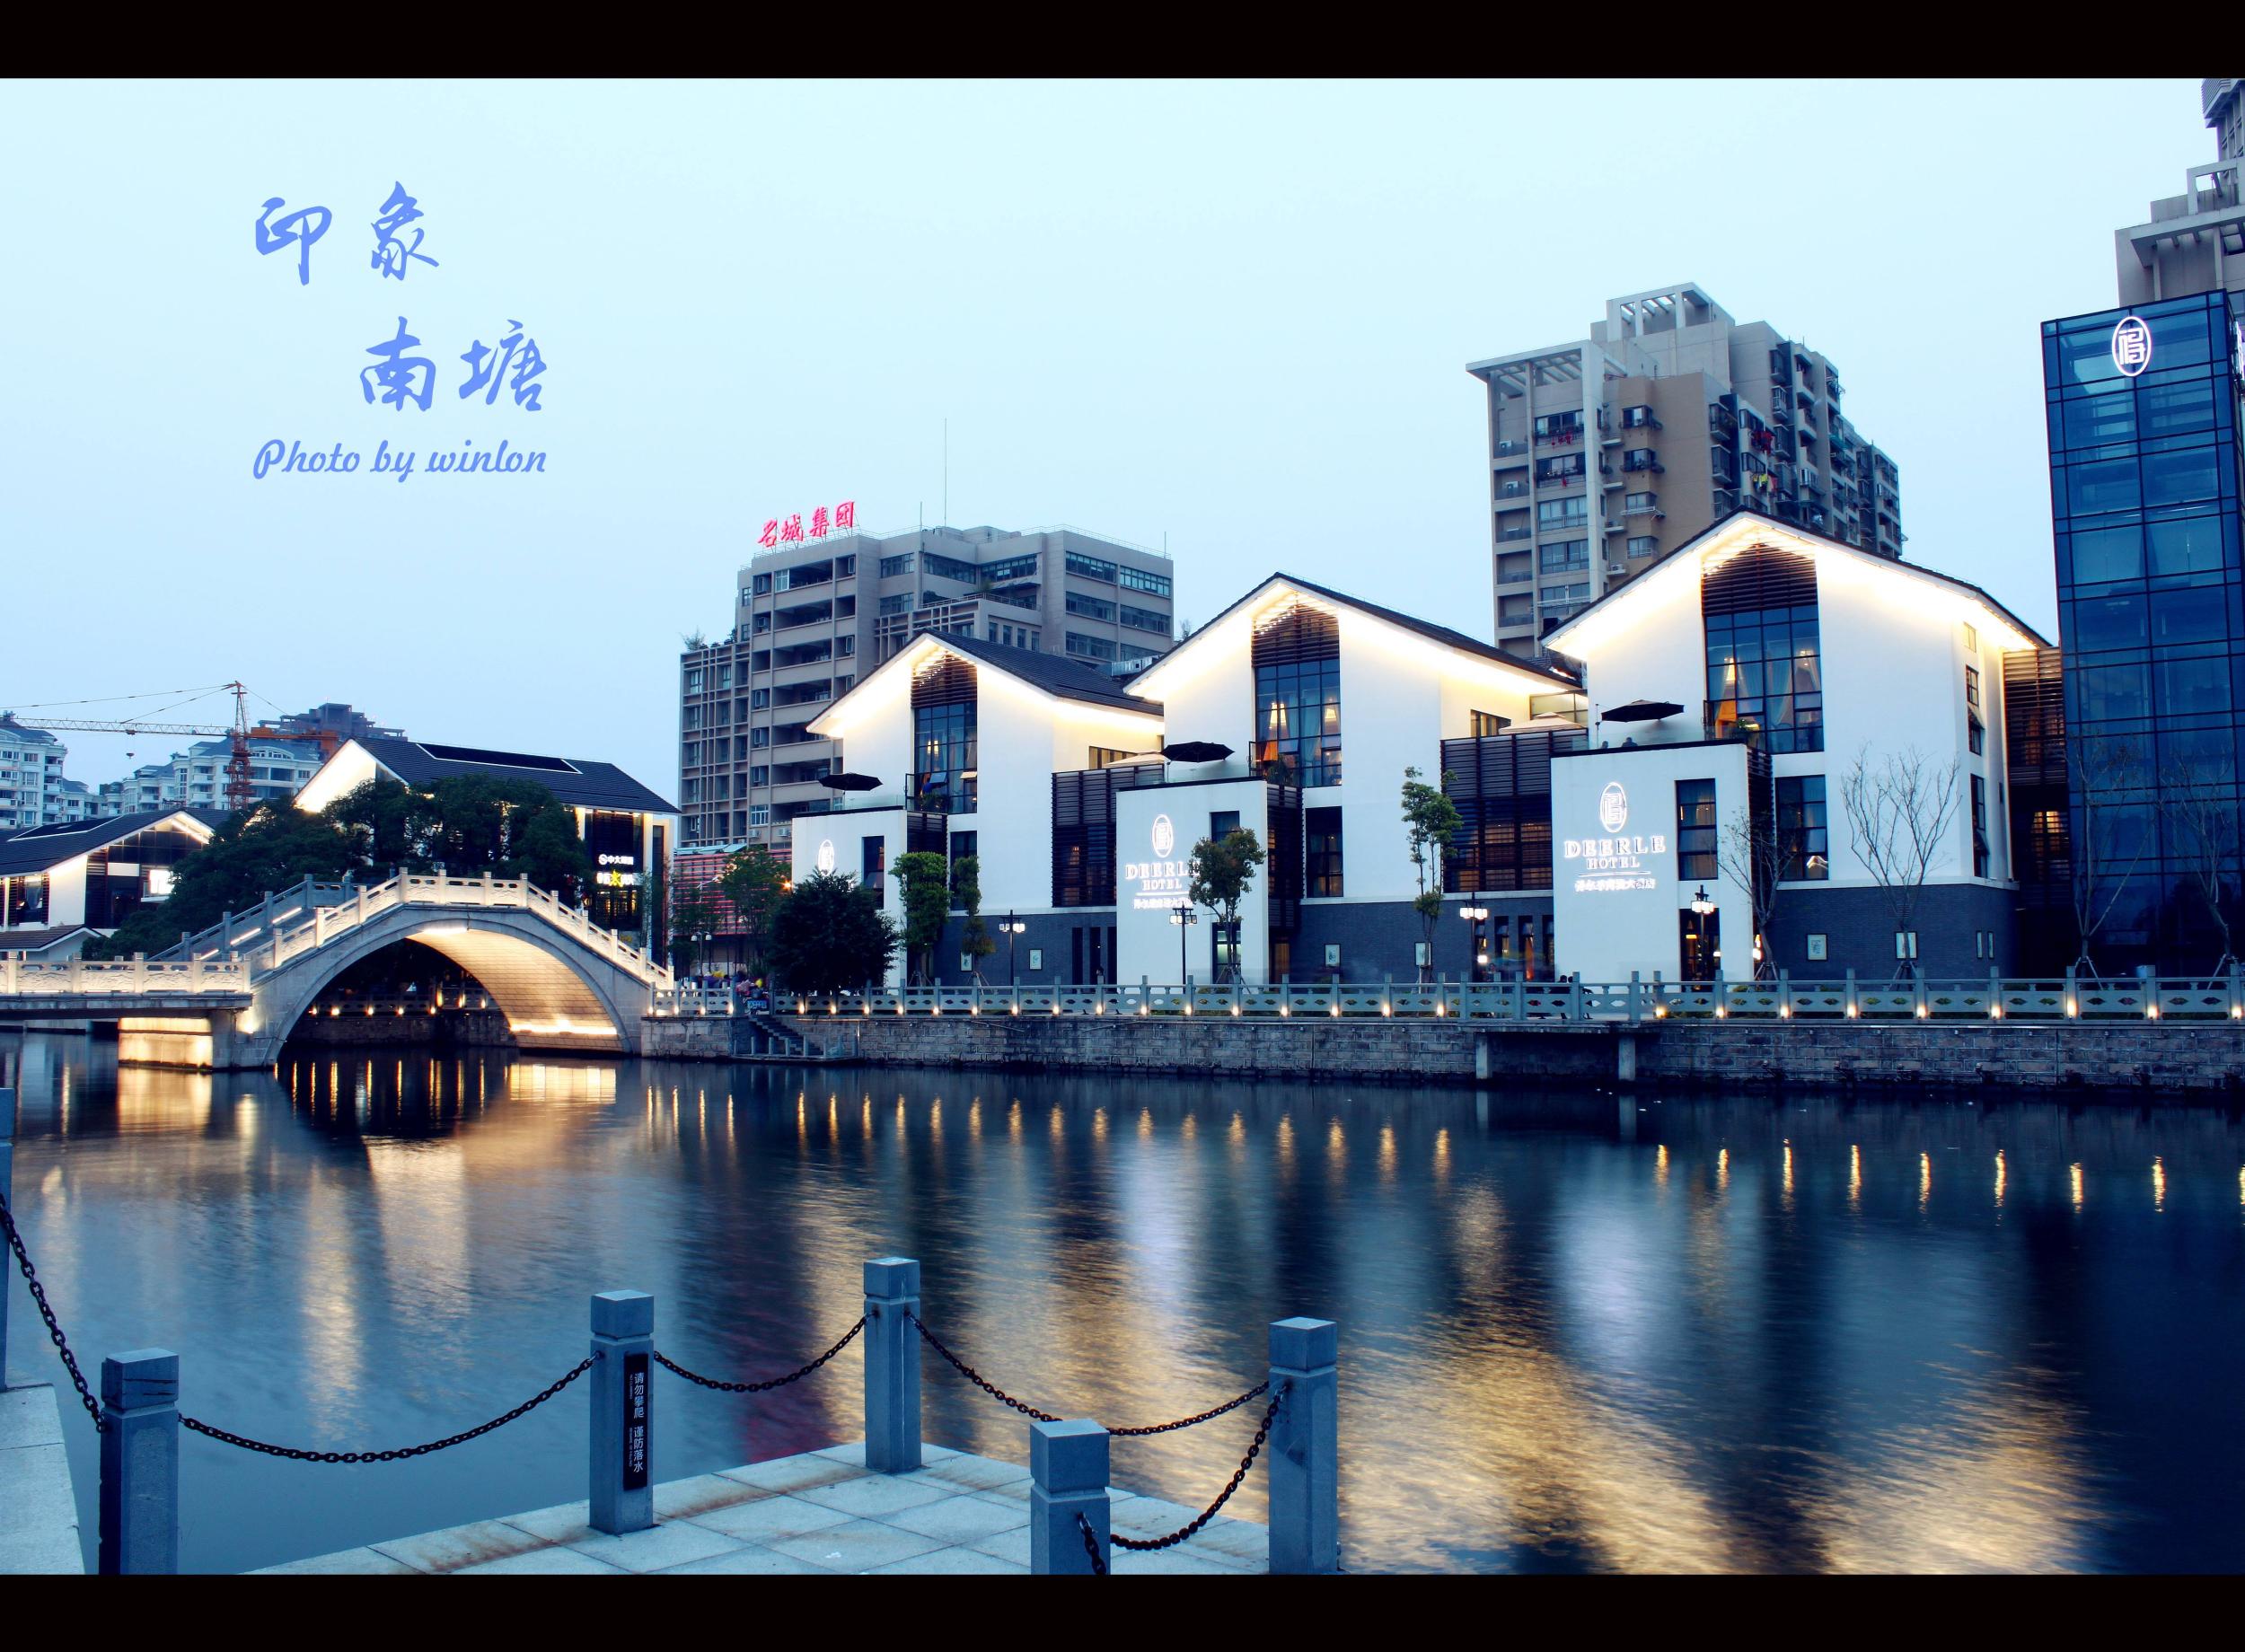 上海+扬州+无锡+苏州+杭州6日5晚跟团游_常州_江苏旅游_线路_江苏旅游网